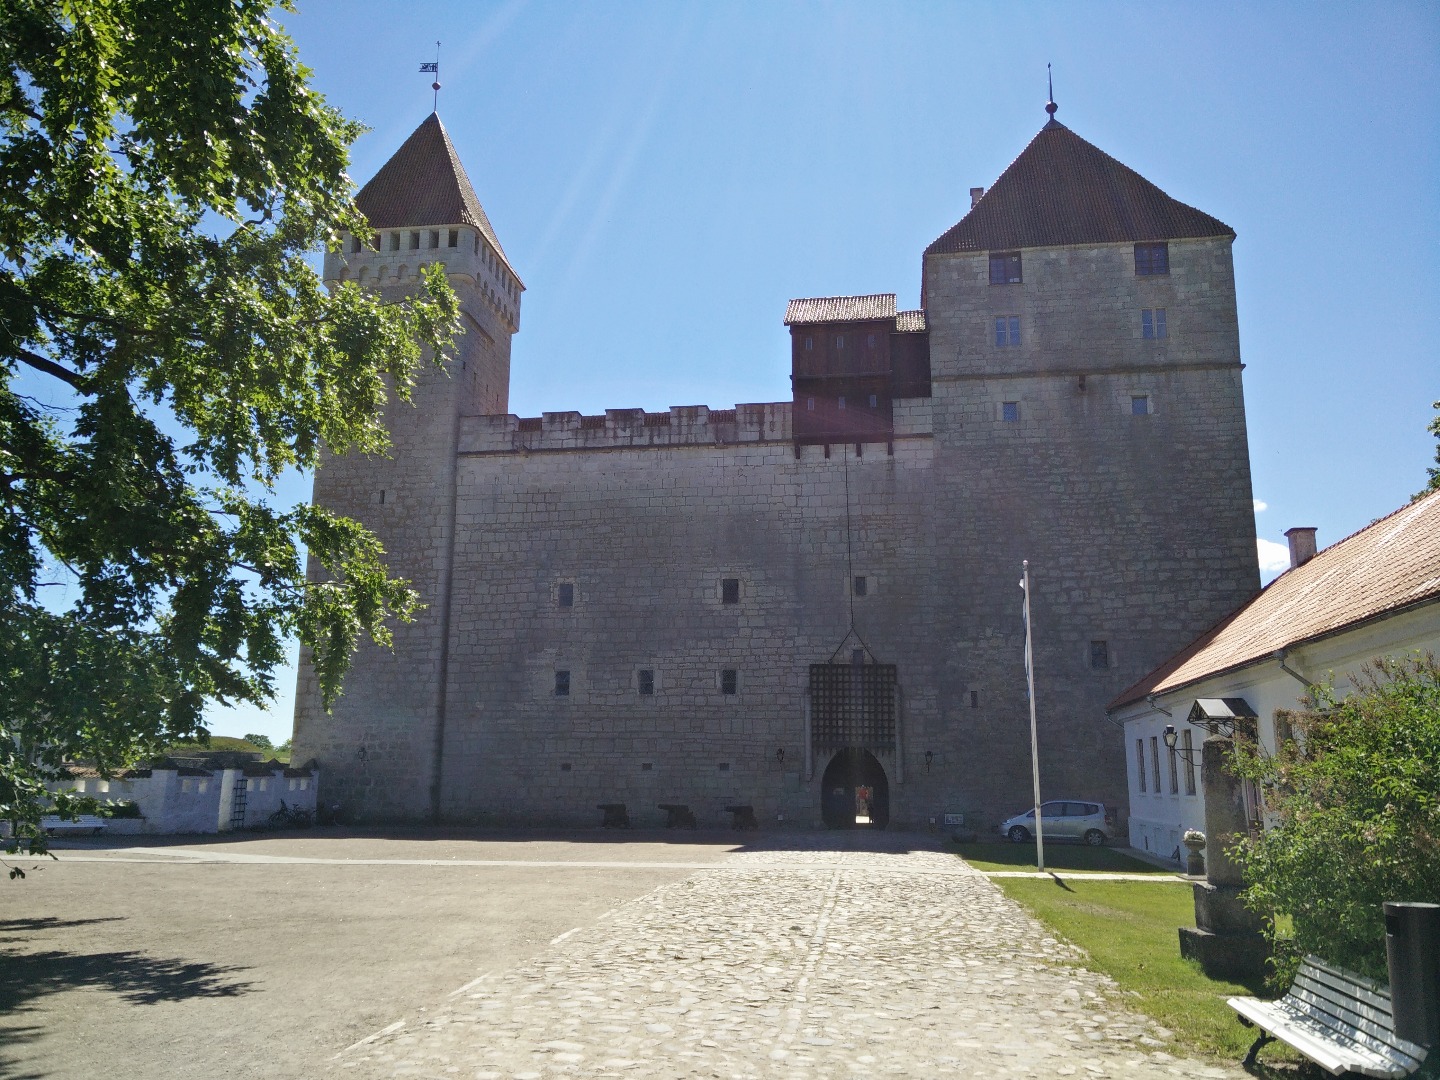 Kuressaare Castle in Saaremaa, 1988 rephoto